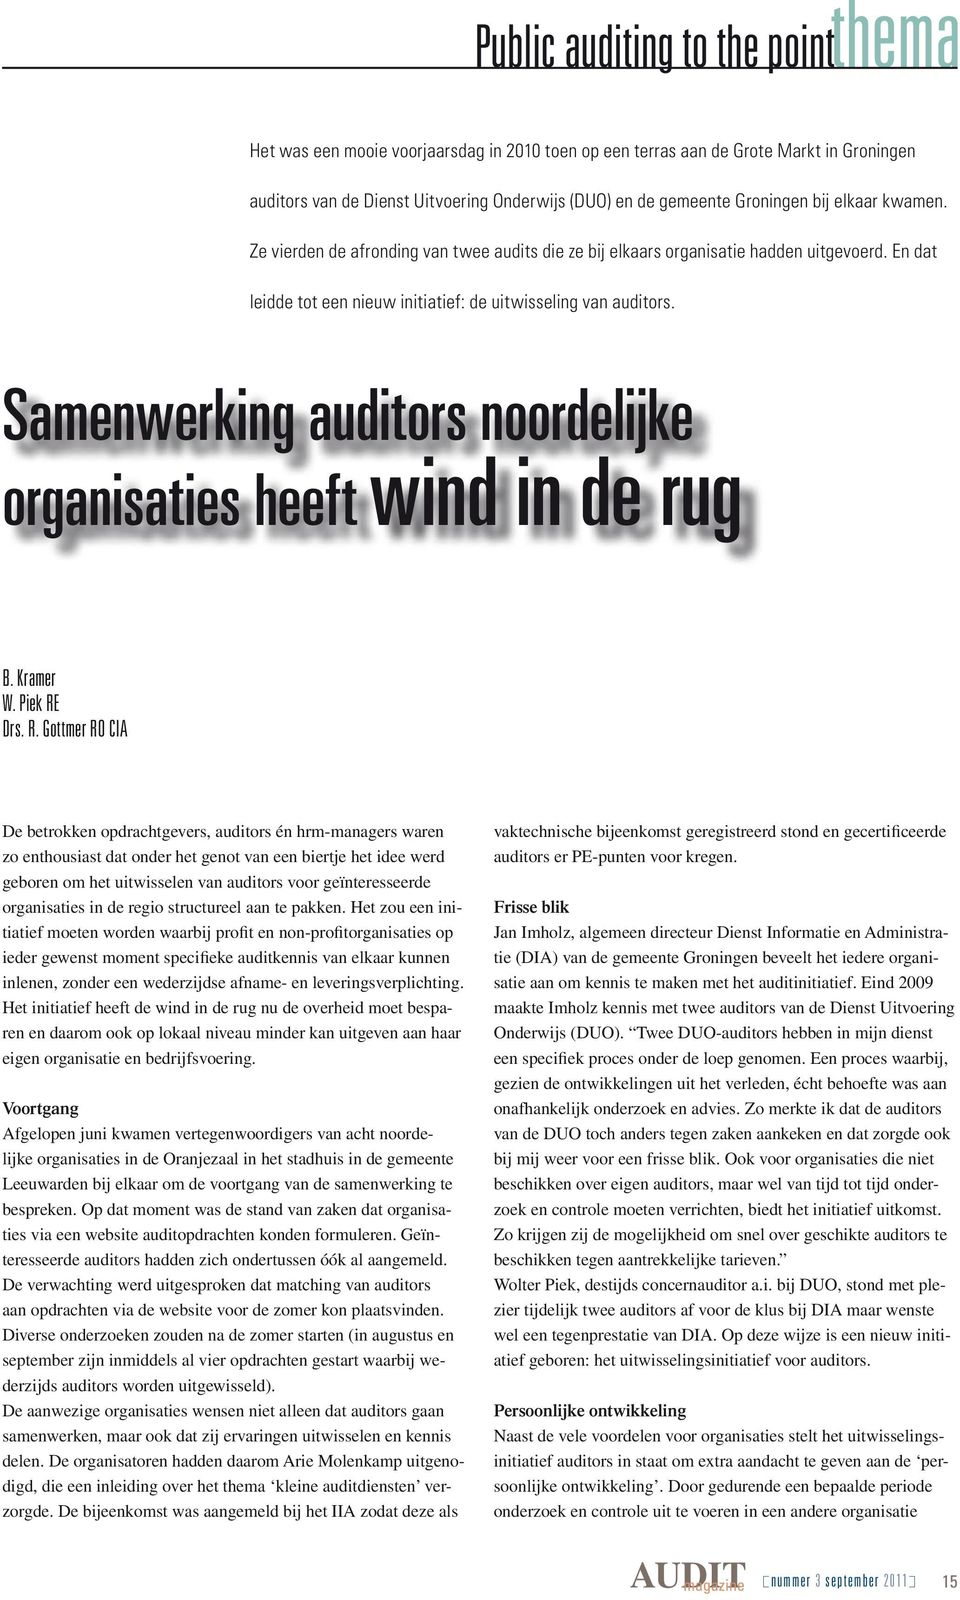 Samenwerking auditors noordelijke organisaties heeft wind in de rug B. Kramer W. Piek RE